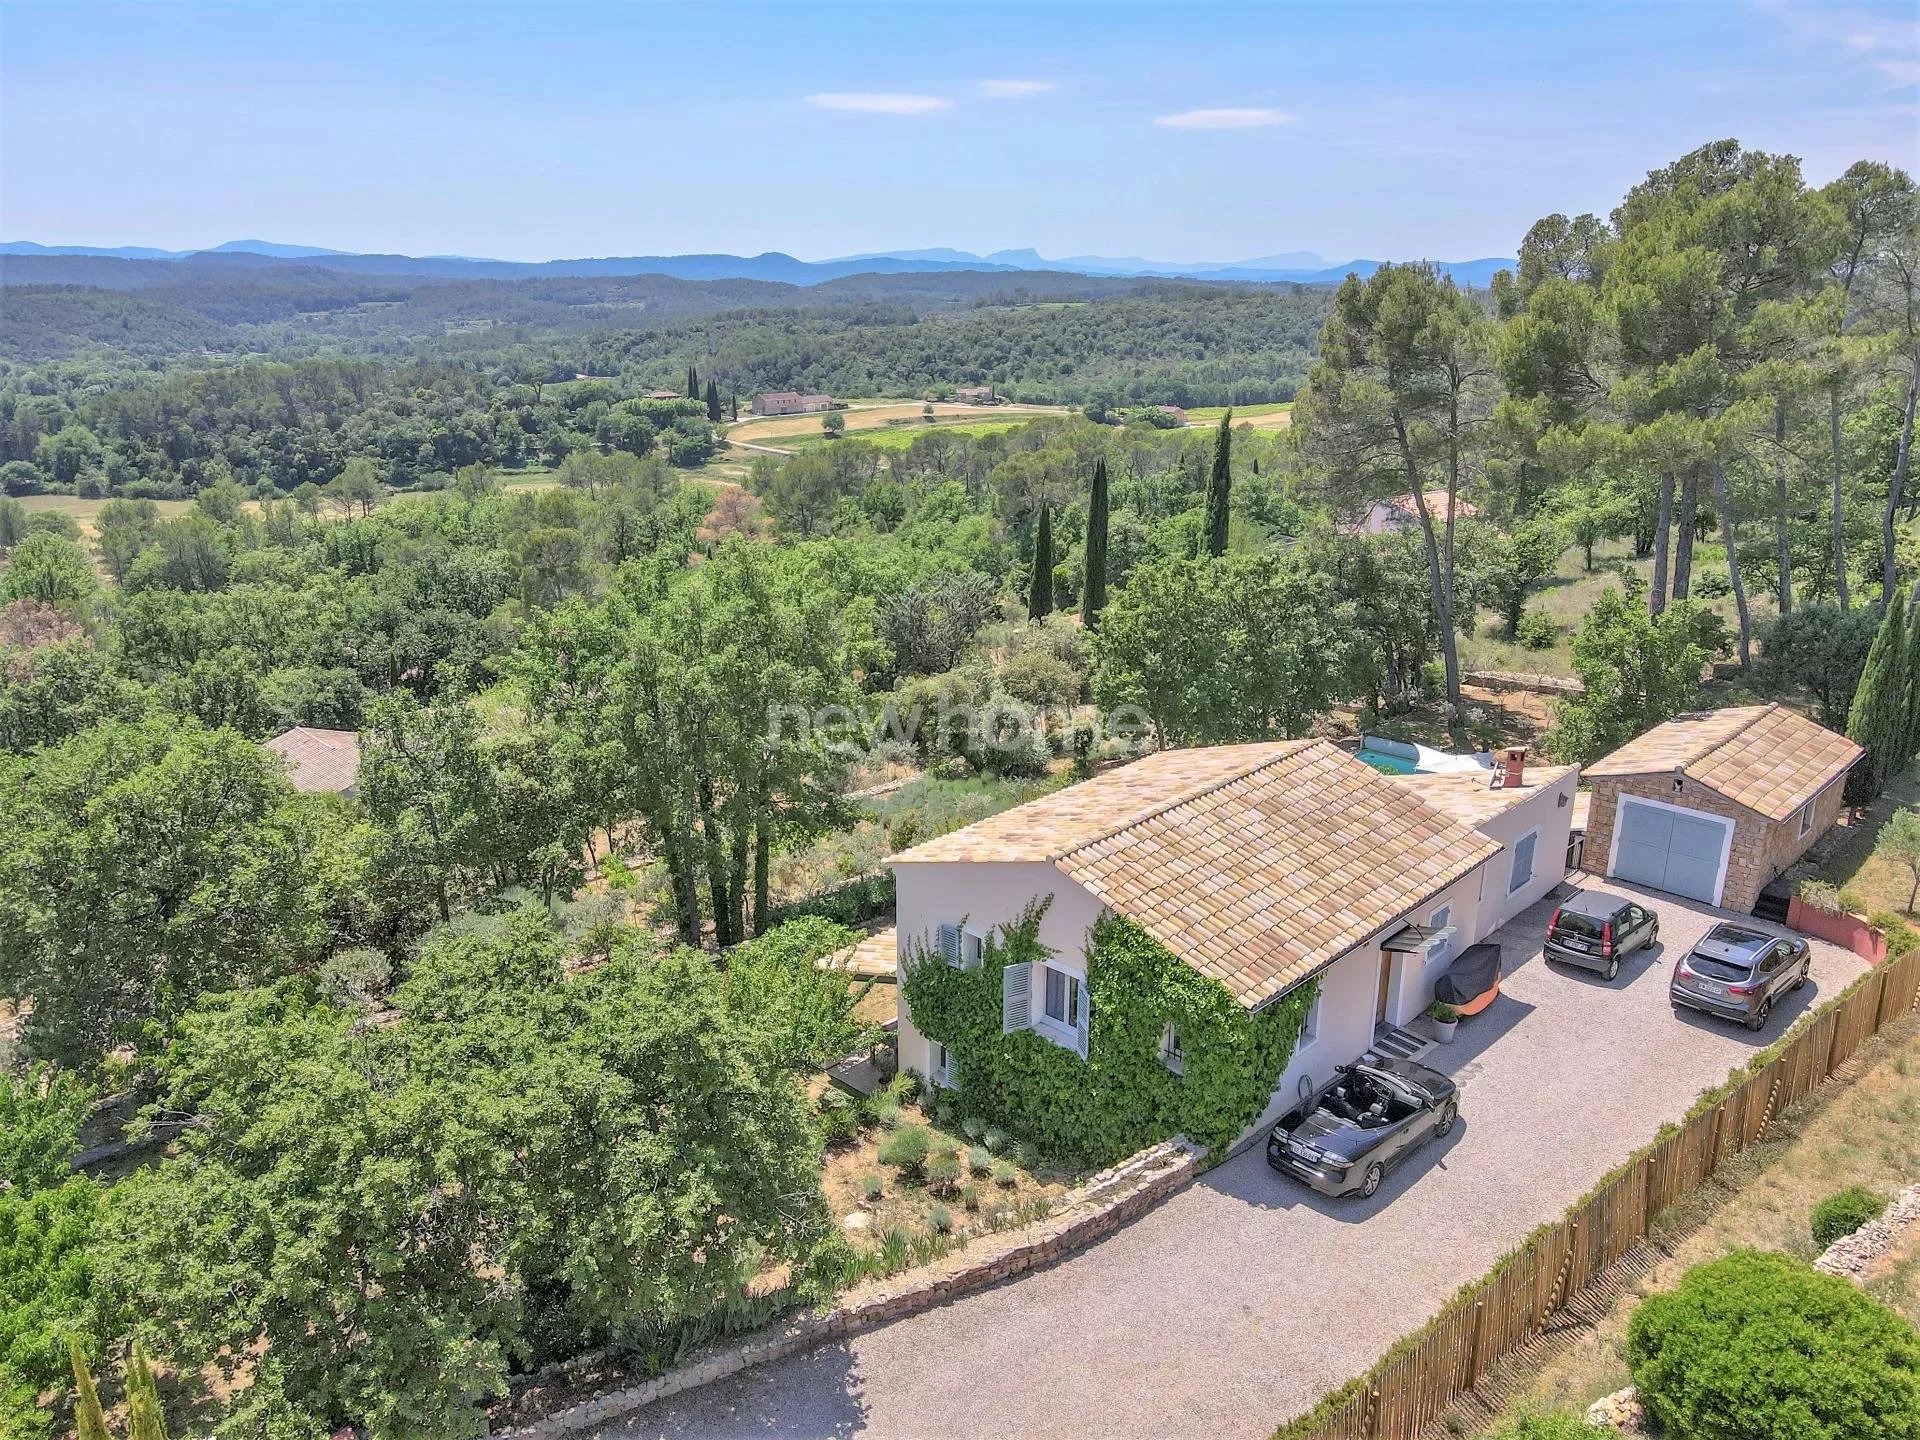 Stijlvolle villa van een architect in groen paradijs met formidabel wijds uitzicht.